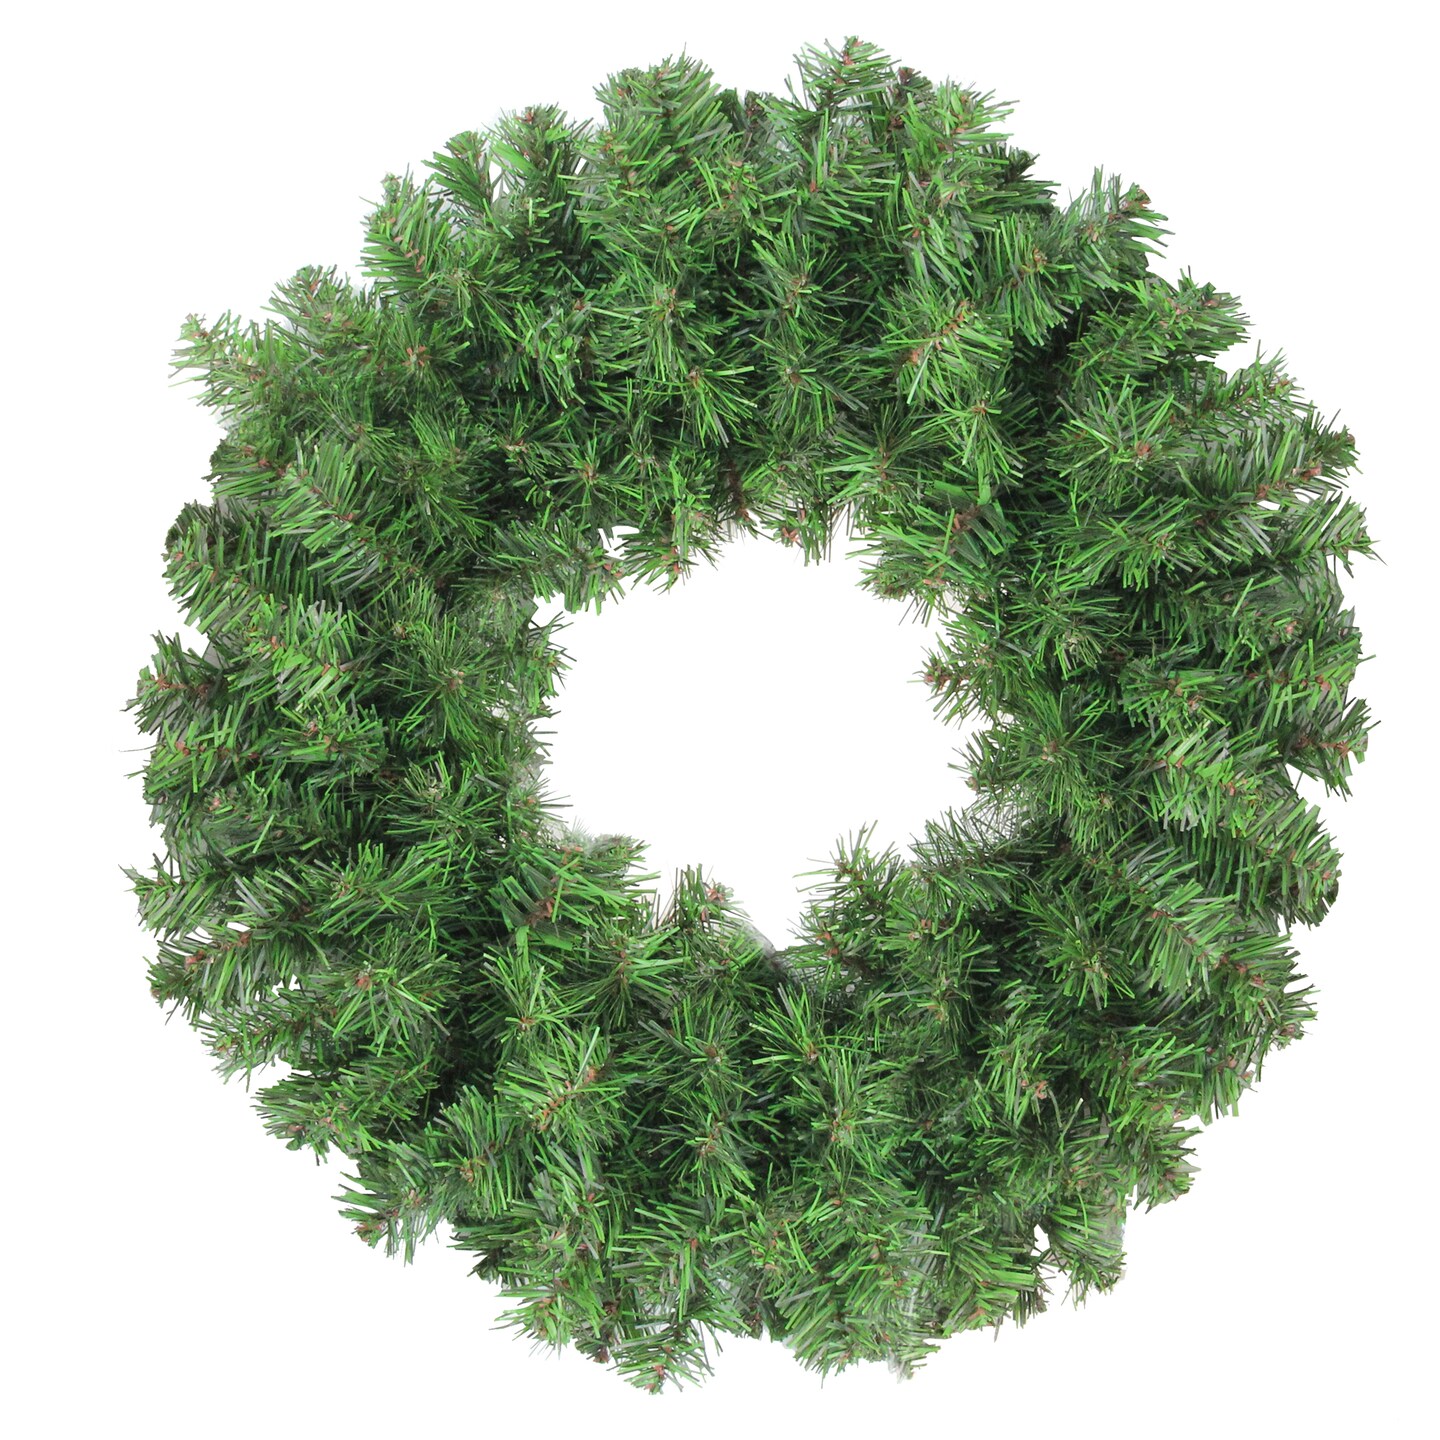 Northlight Colorado Spruce Artificial Christmas Wreath, 16-Inch, Unlit